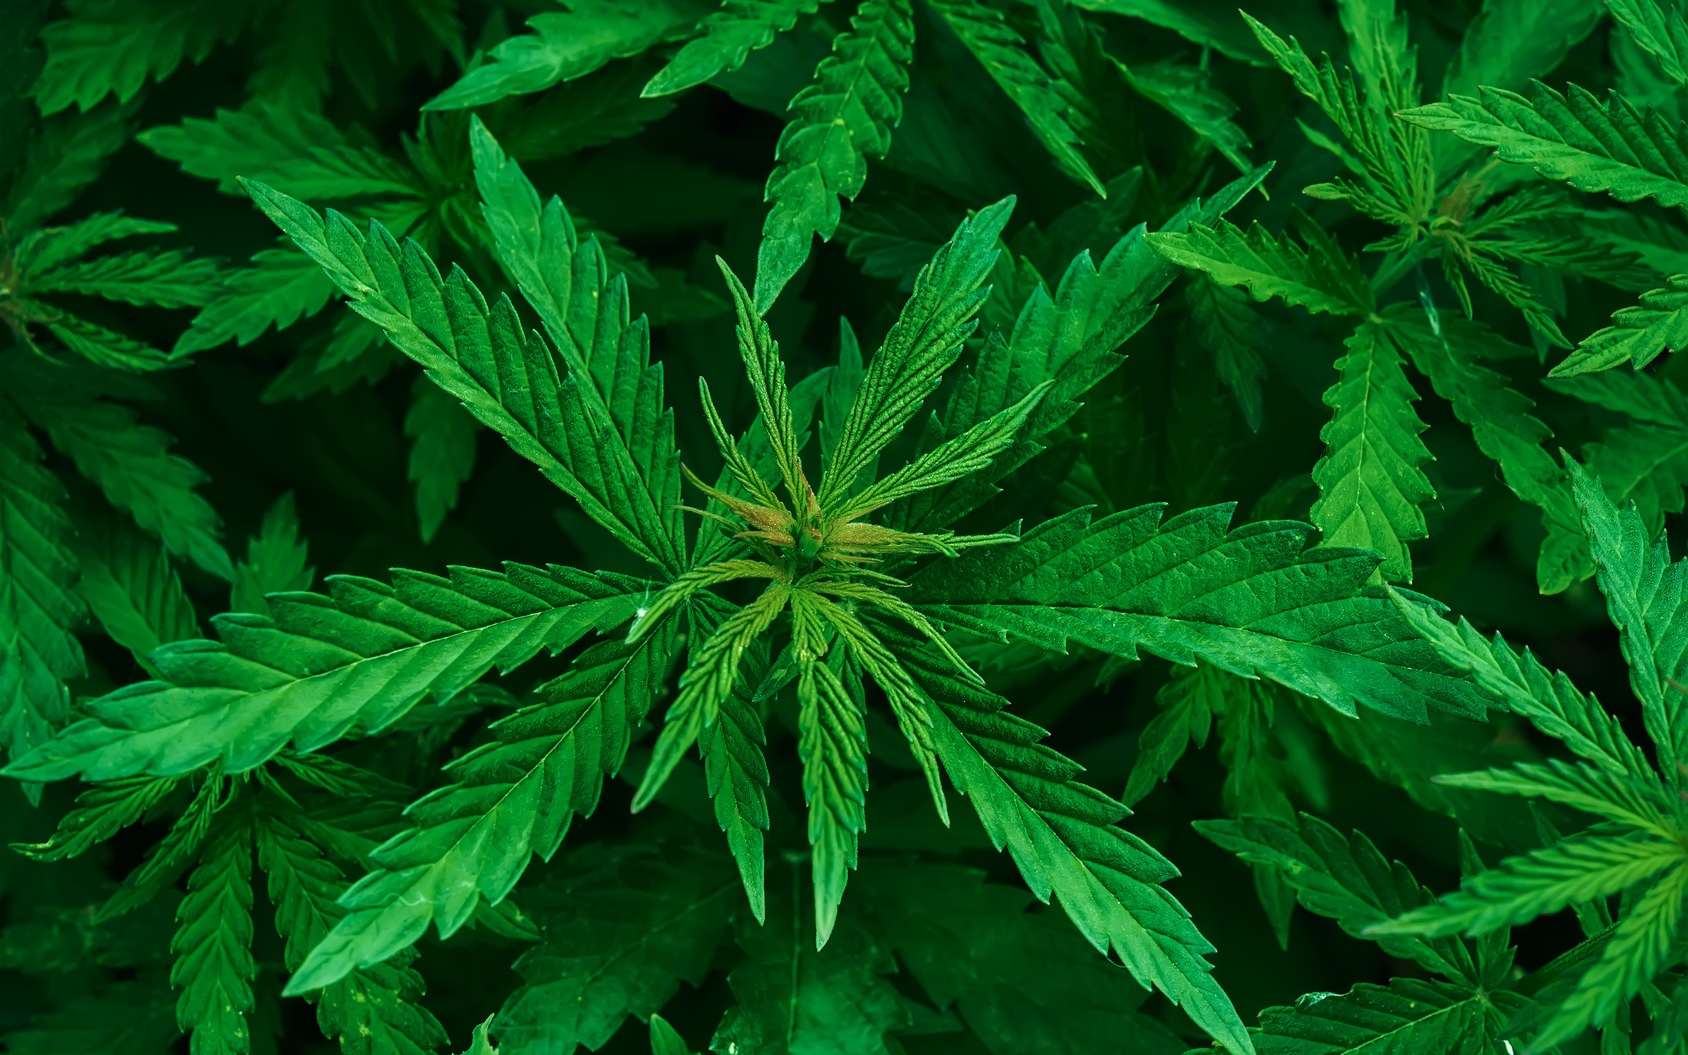 Le cannabis, ou marijuana, provient de la plante Cannabis sativa. Certains usages thérapeutiques sont avérés, d'autres à l’étude. © tainar, Fotolia